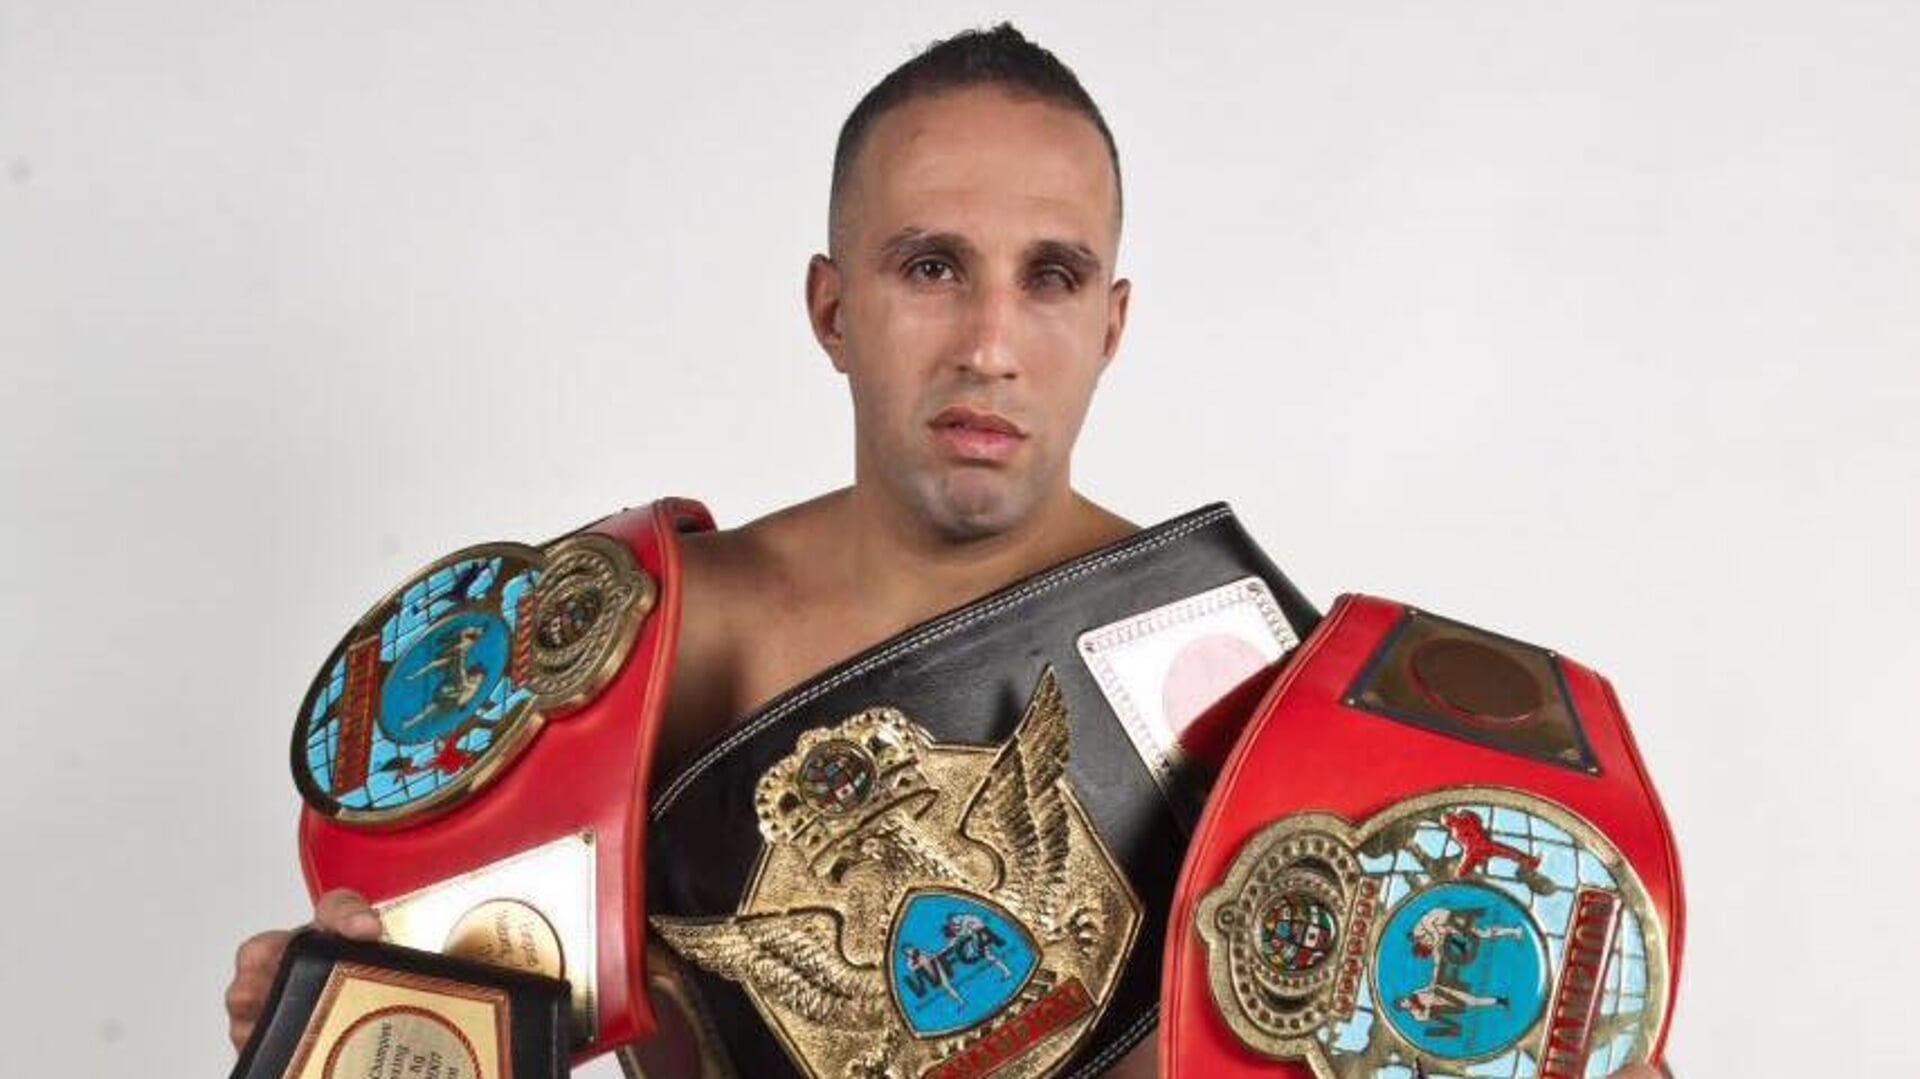 speciaal ingevlogen vijfvoudig wereldkampioen bokskampioen Faldir Chahbari